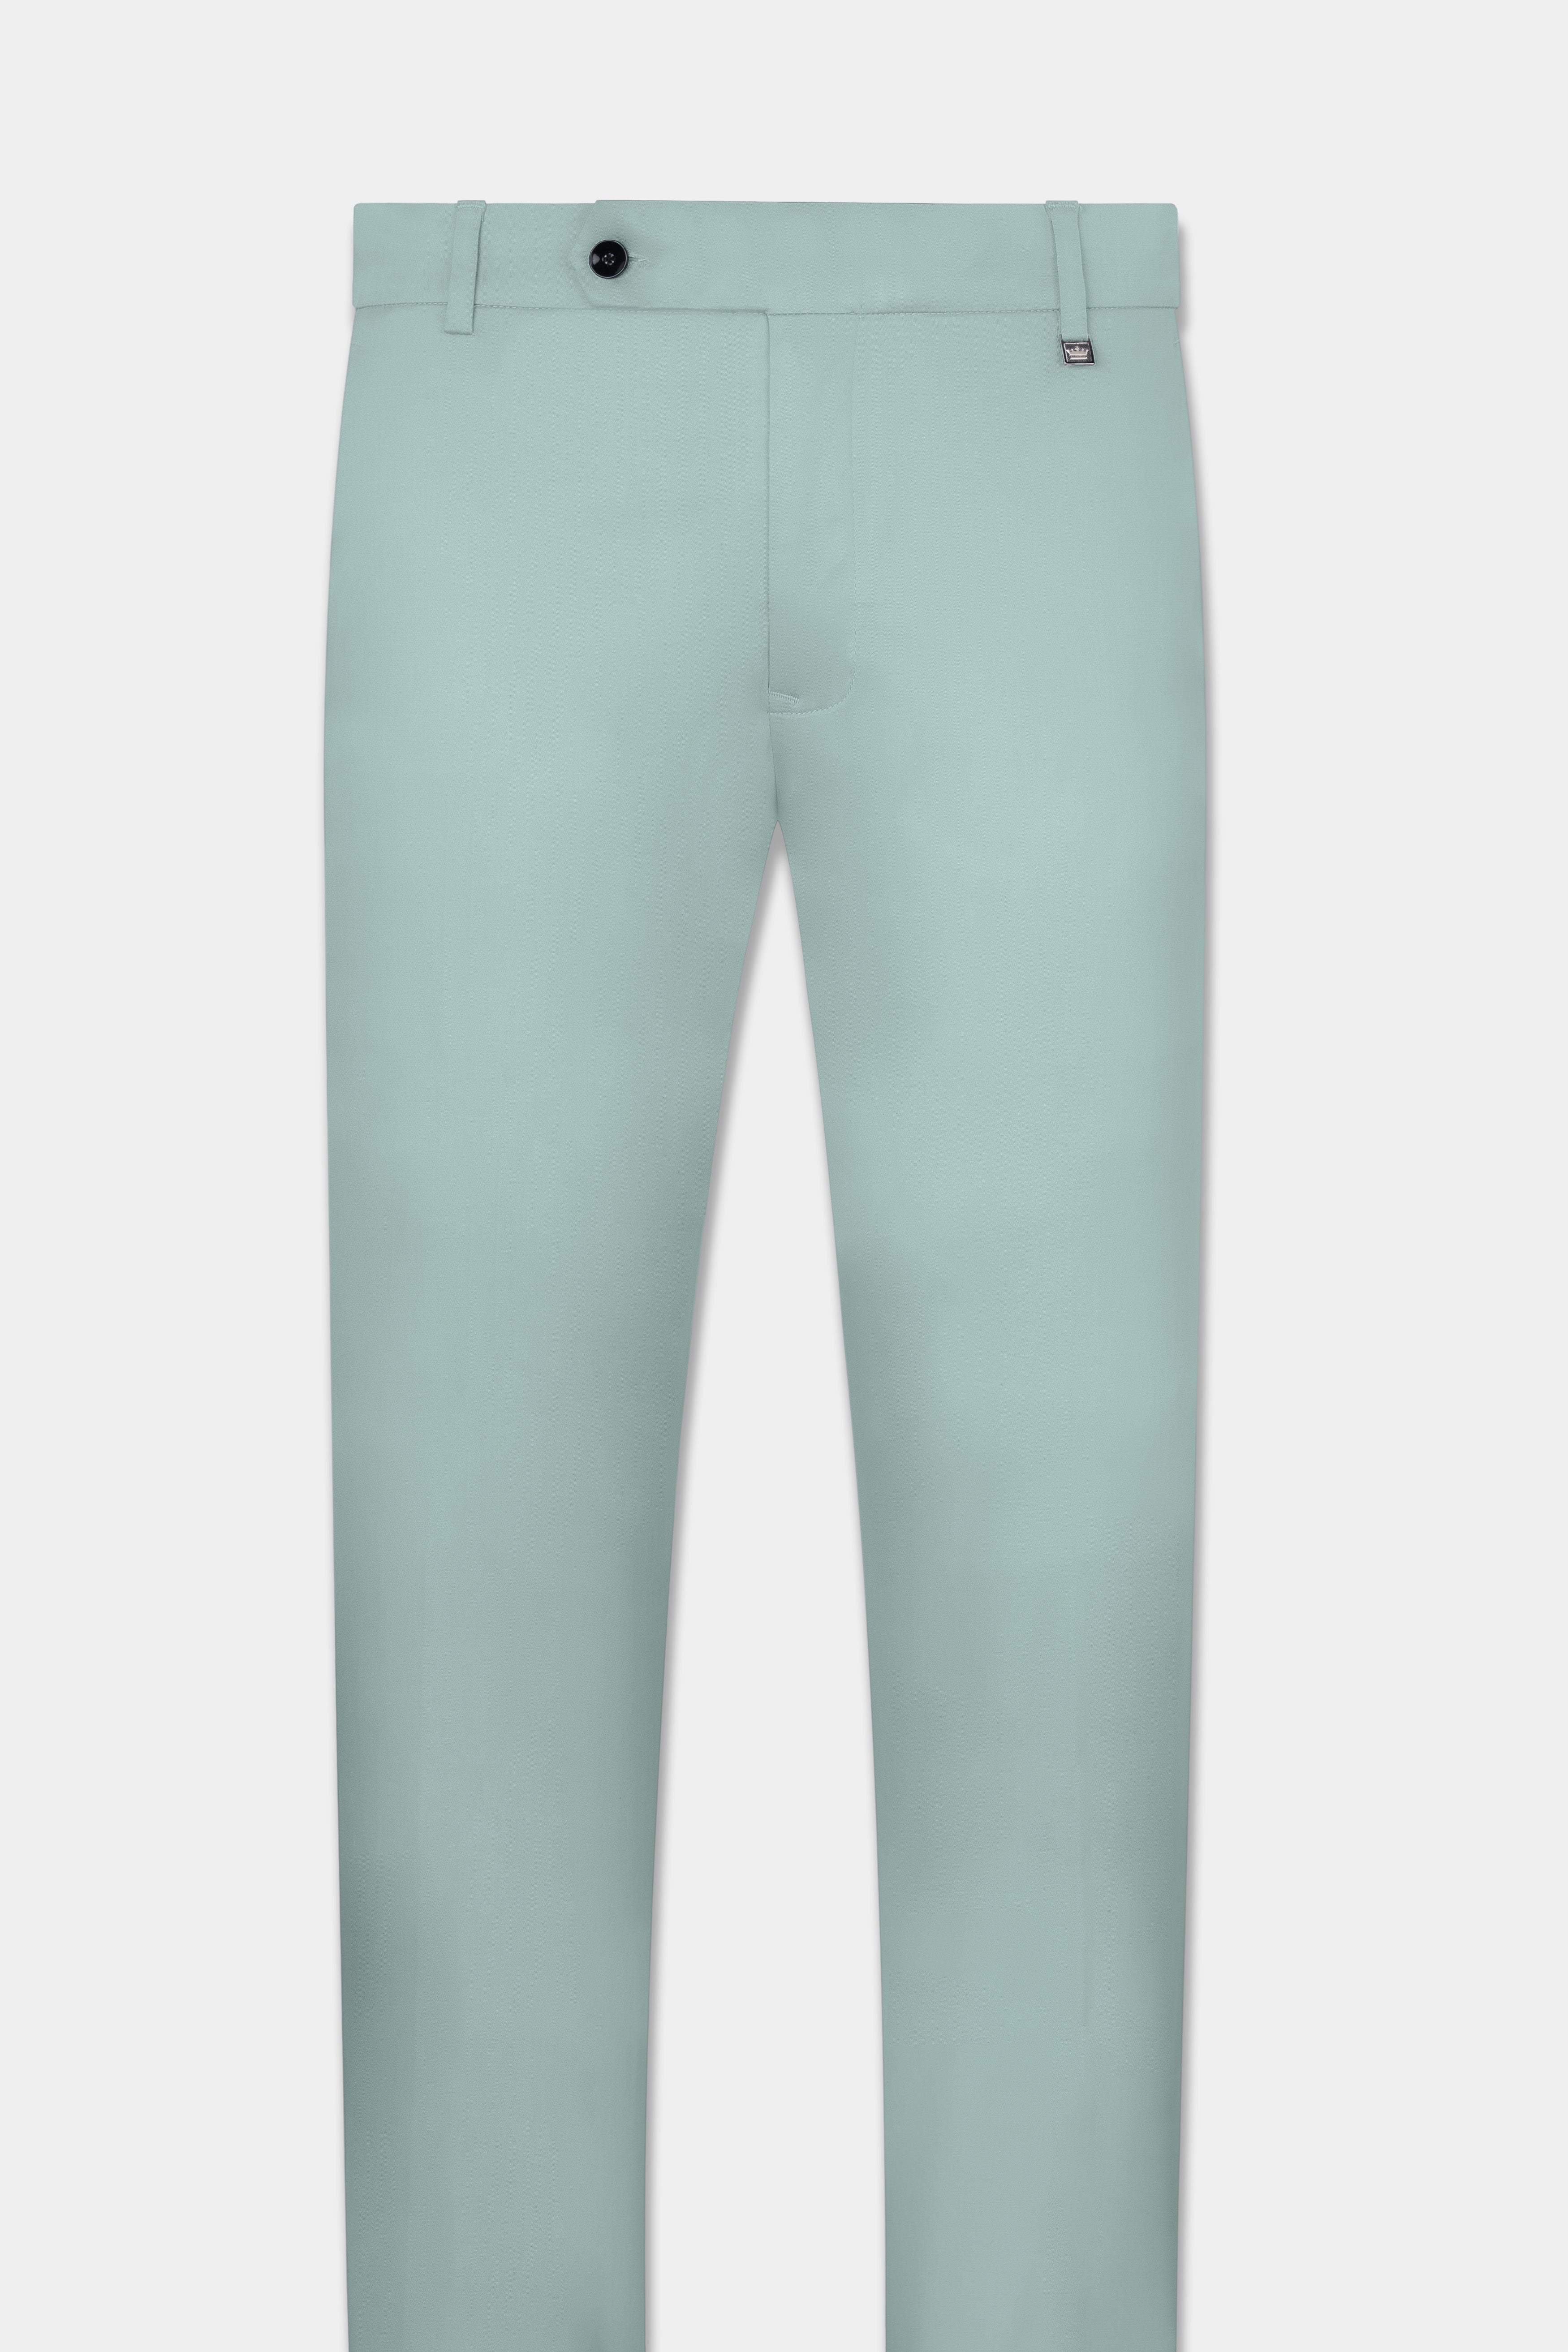 Buy Light Blue Cotton Blend Slim Pants Online - W for Woman